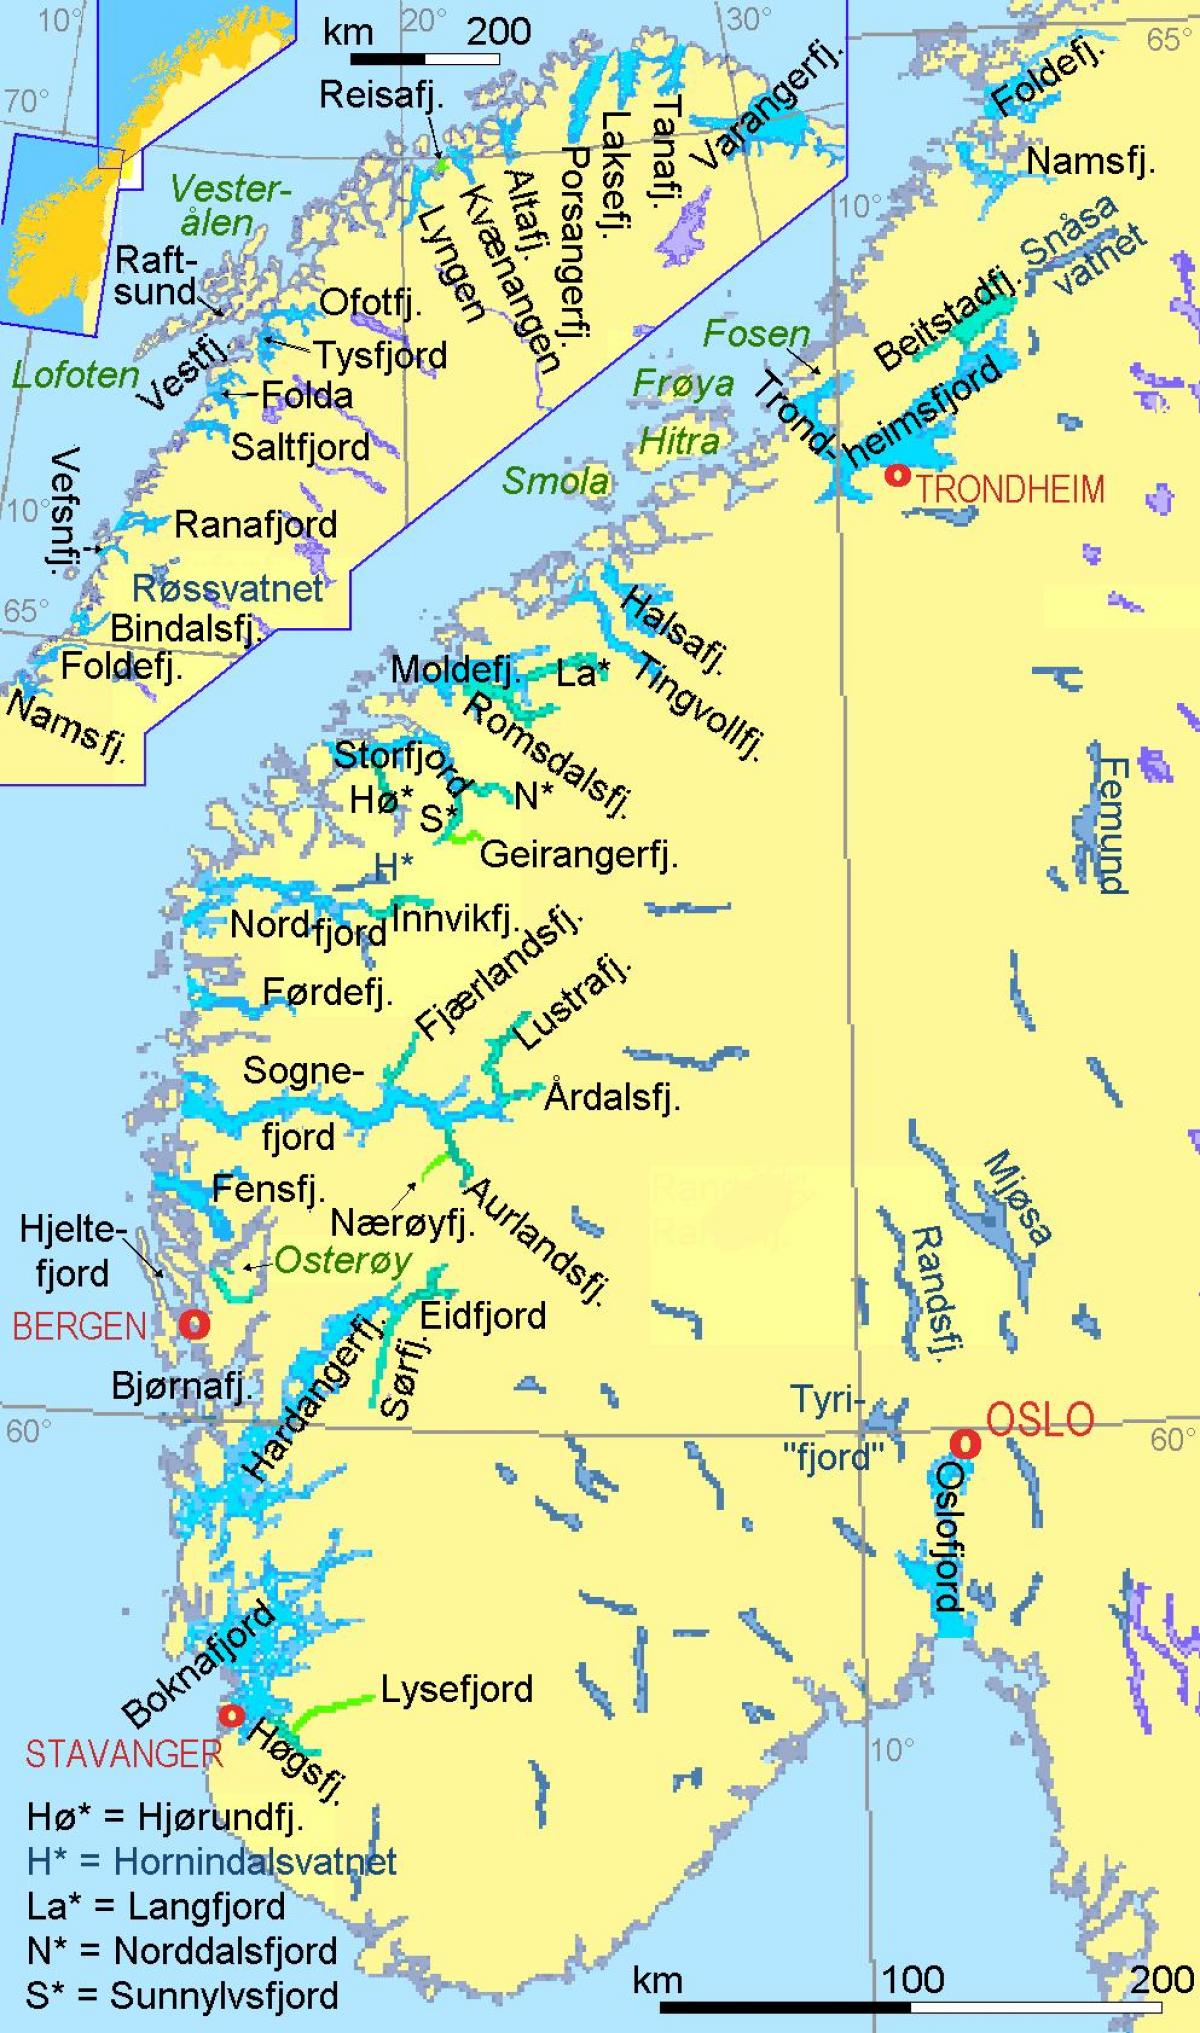 χάρτης της Νορβηγίας δείχνει φιόρδ